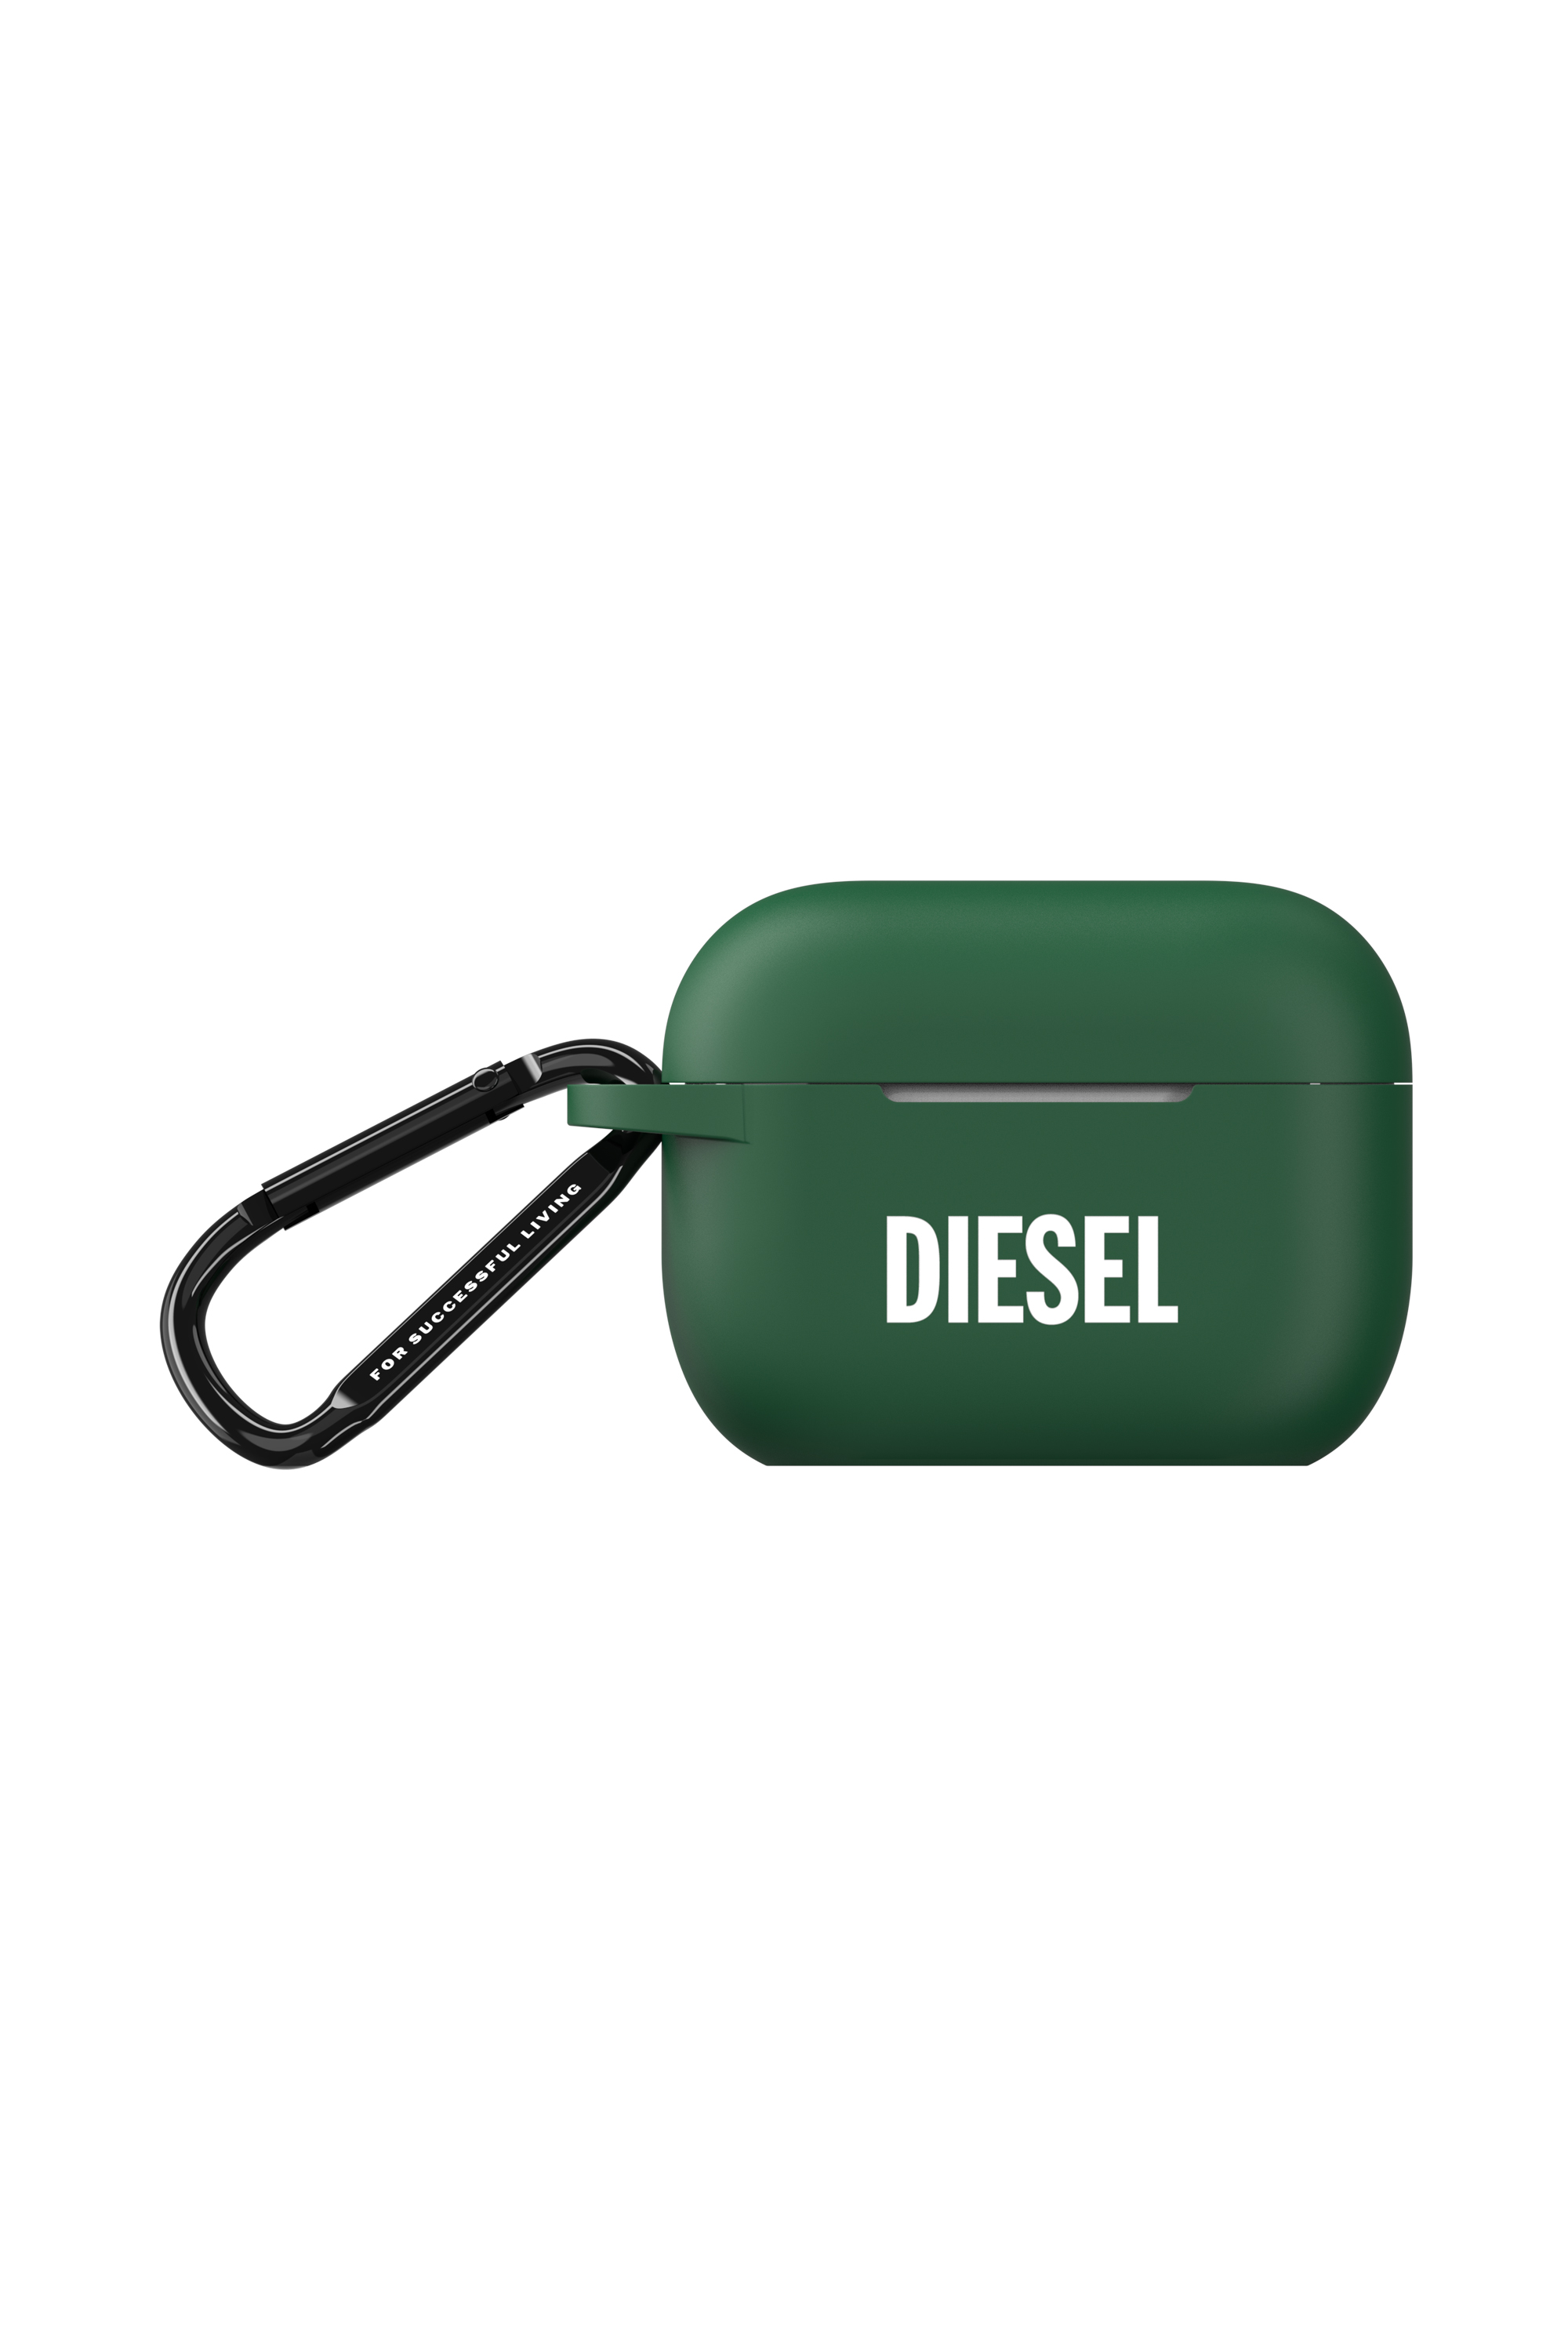 Diesel - 49671 MOULDED CASE, Green - Image 1